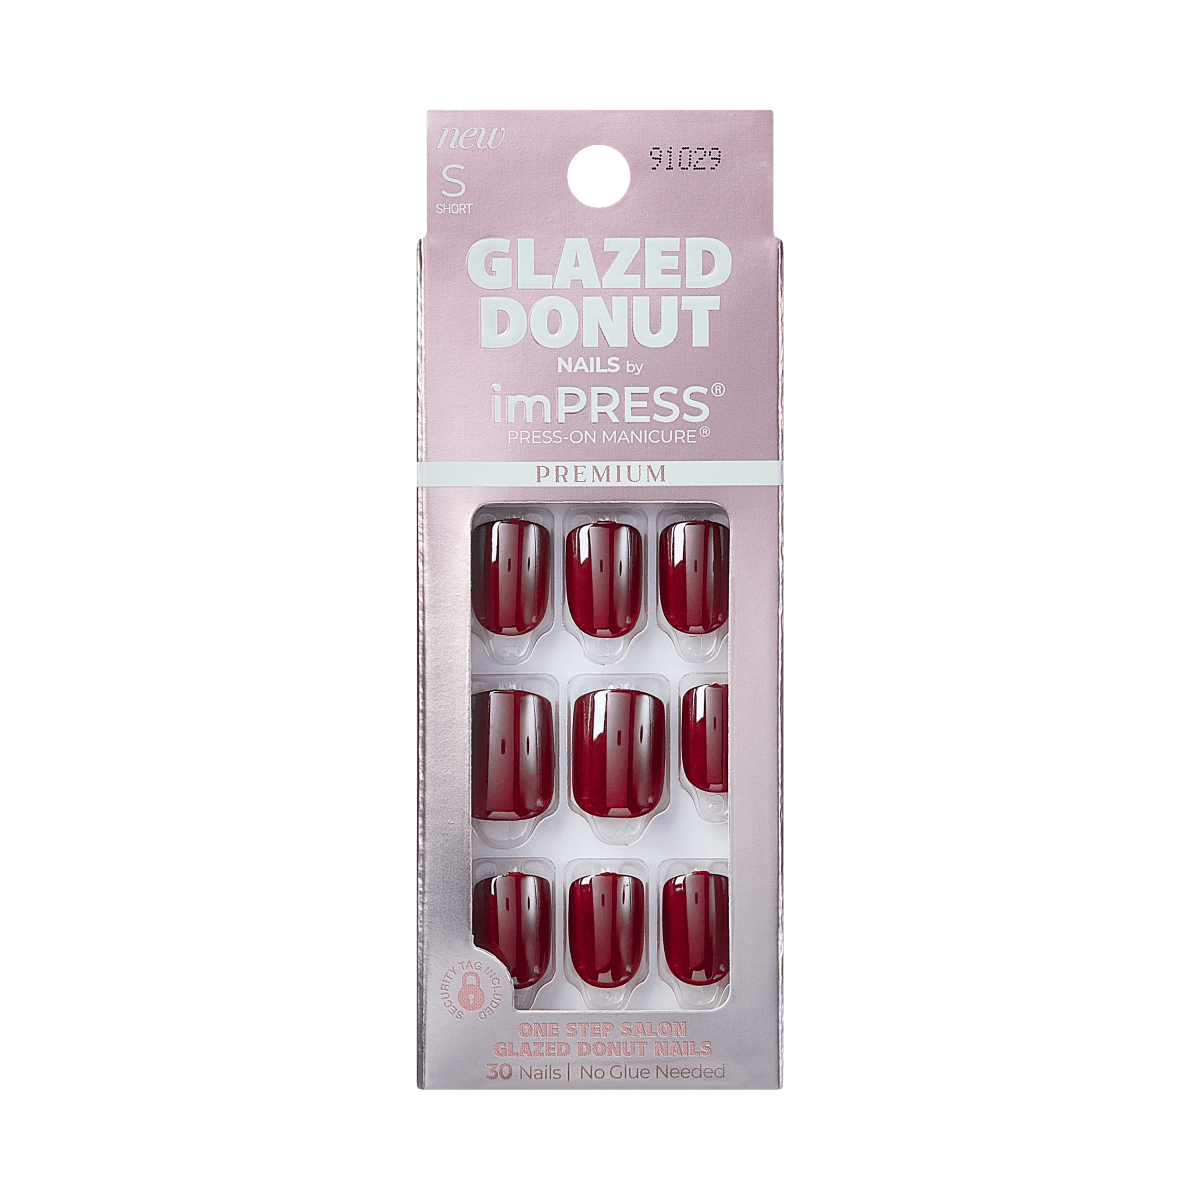 imPRESS Glazed Donut Press-On Manicure - Maple Glazed